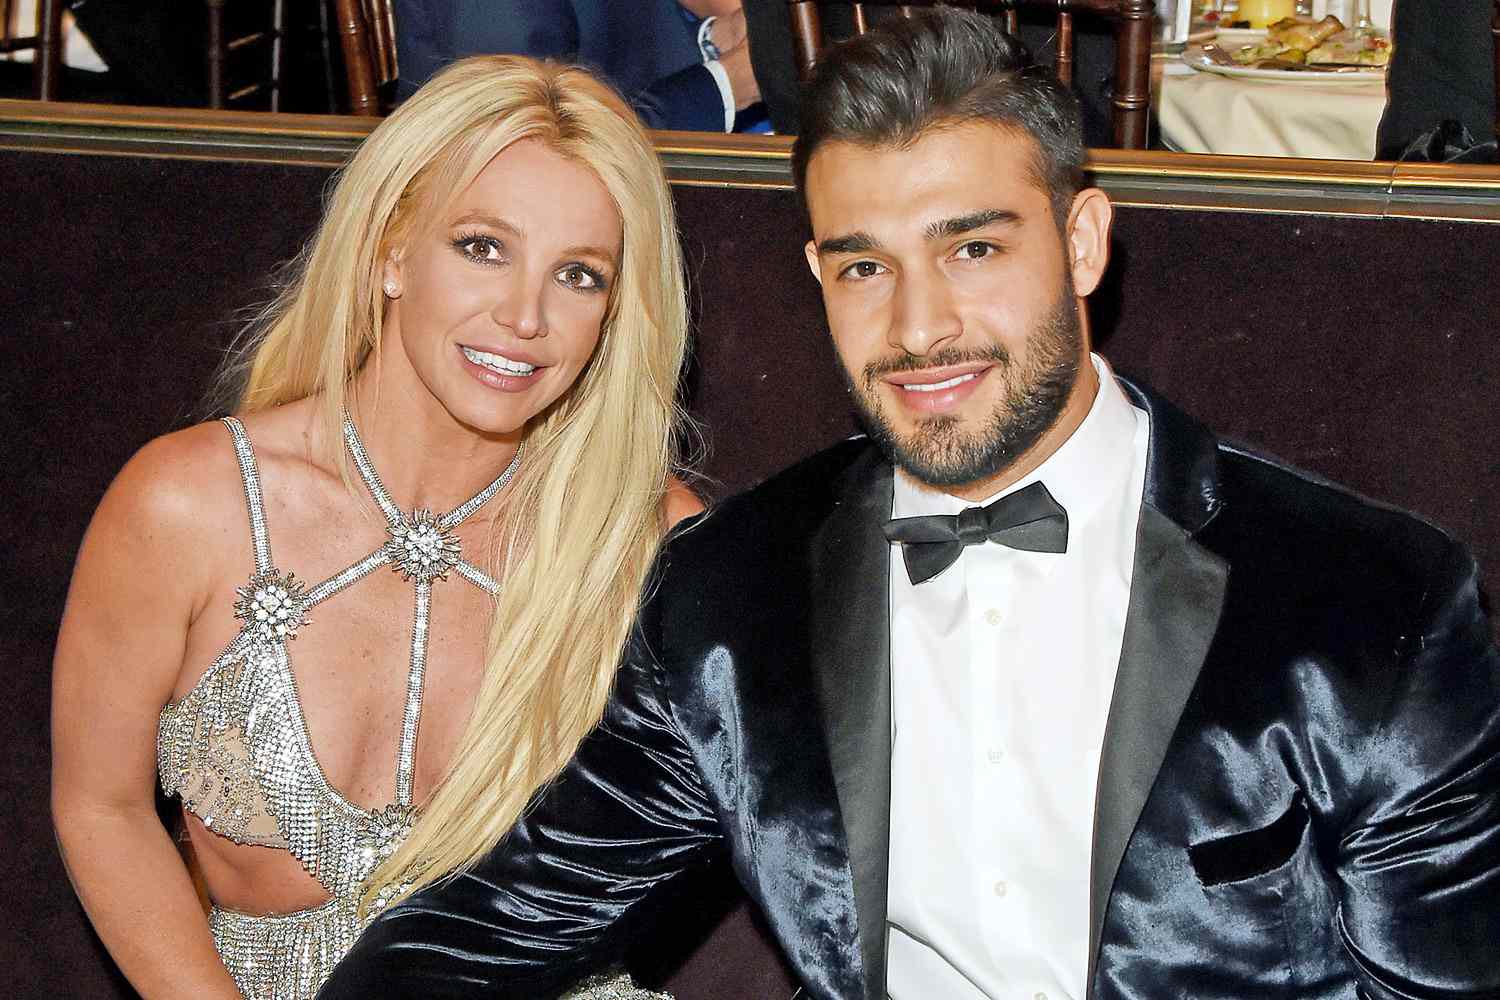 Shkak tradhëtia! Britney Spears dhe Sam Asghari flitet se janë ndarë